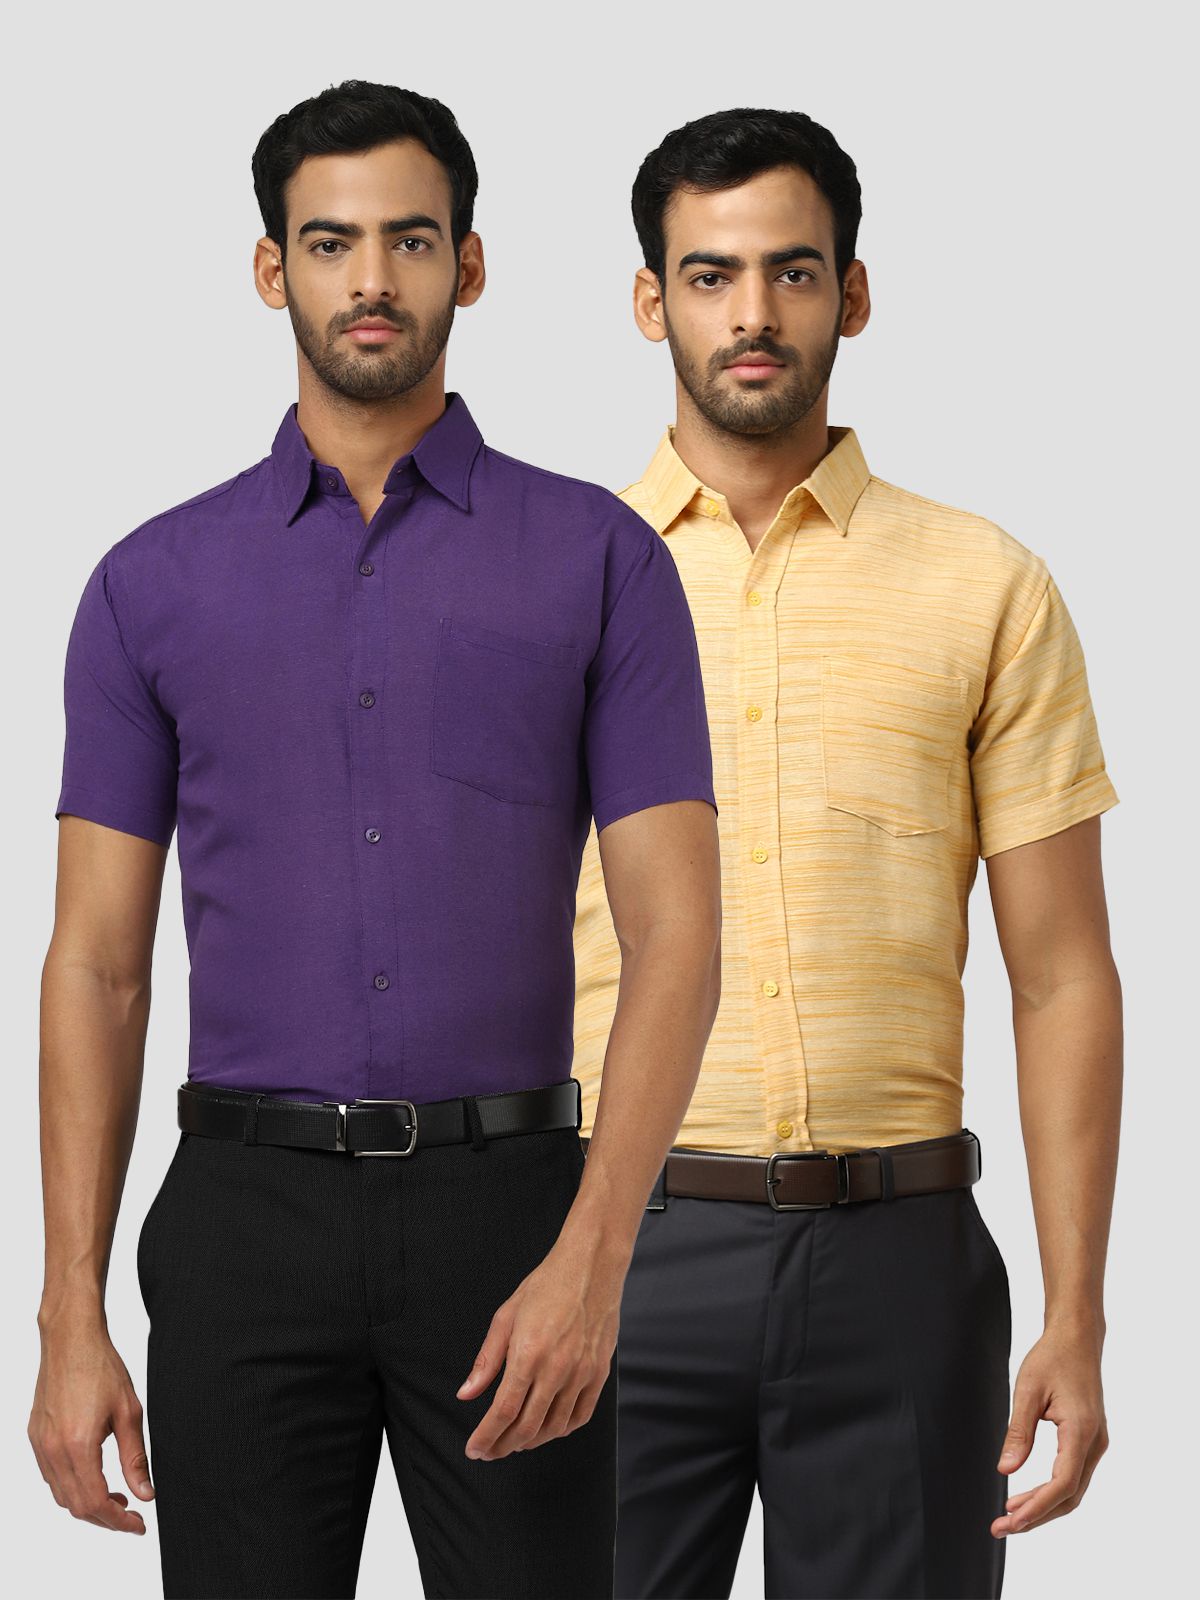     			DESHBANDHU DBK - Multicolor Cotton Regular Fit Men's Formal Shirt ( Pack of 2 )